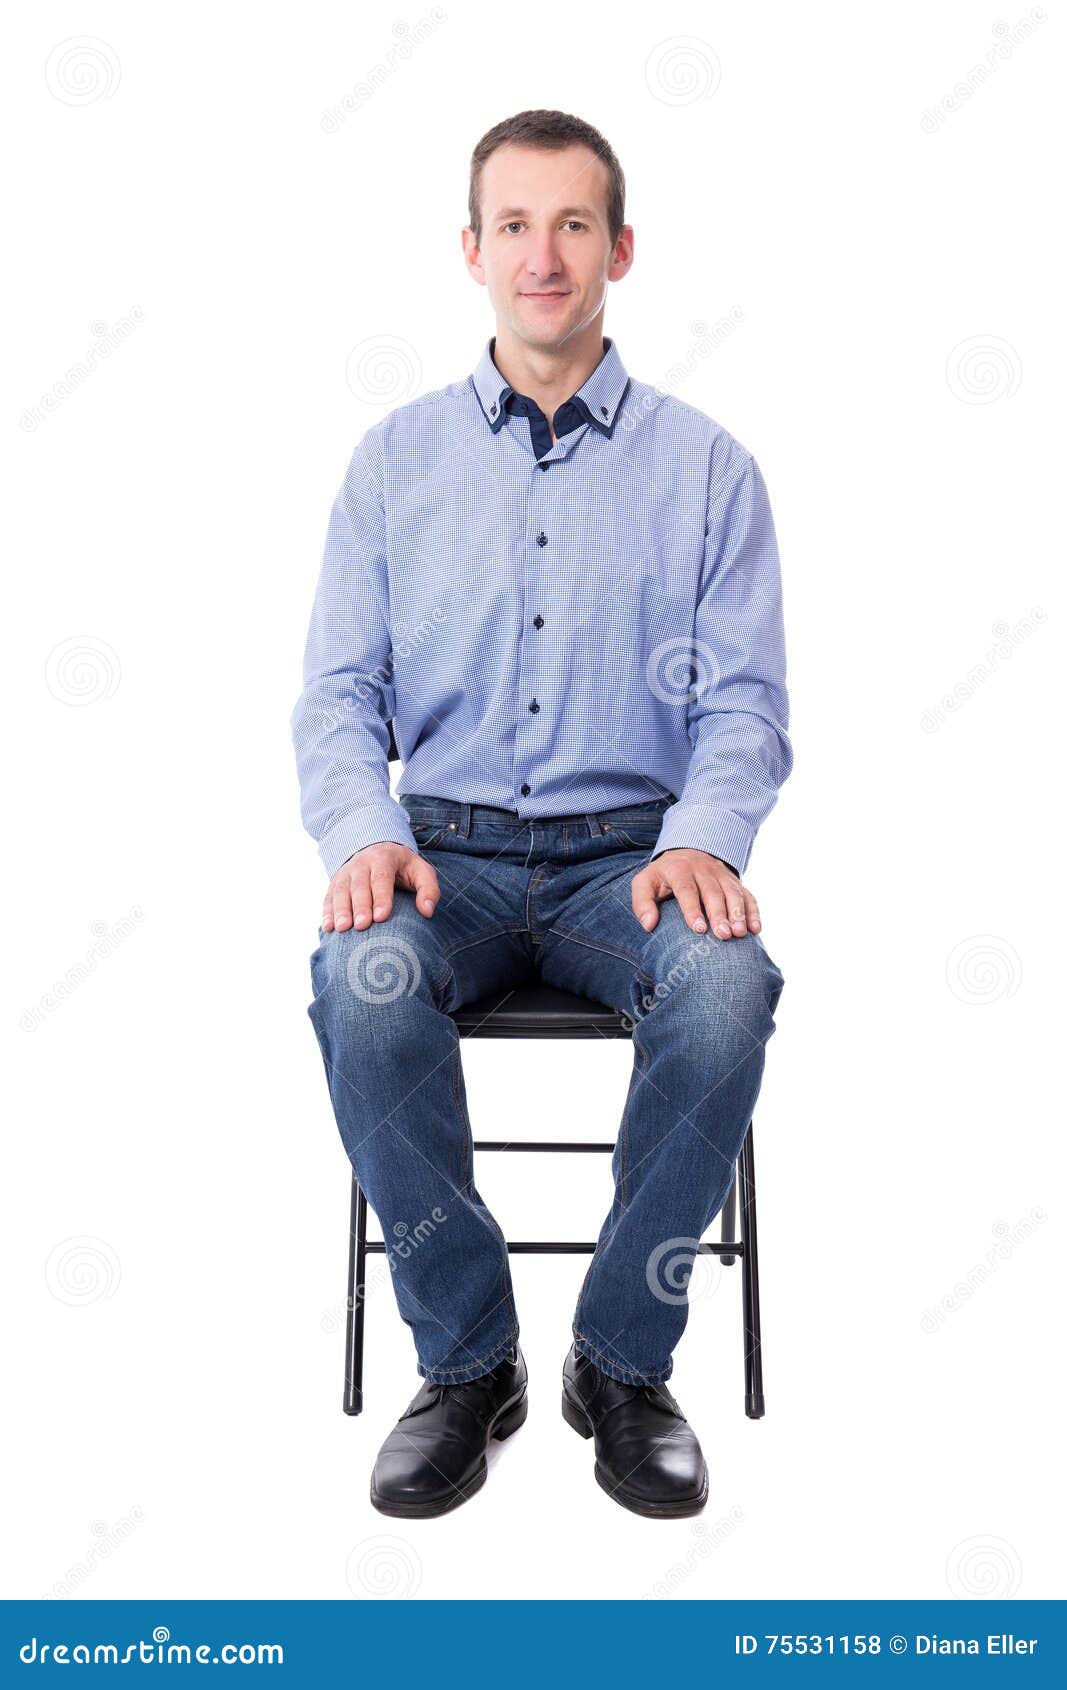 Сидит какое лицо. Человектсидящий на стуле. Человек сидит на стуле прямо. Человексидяшийна стуле. Человек сидит прямо.